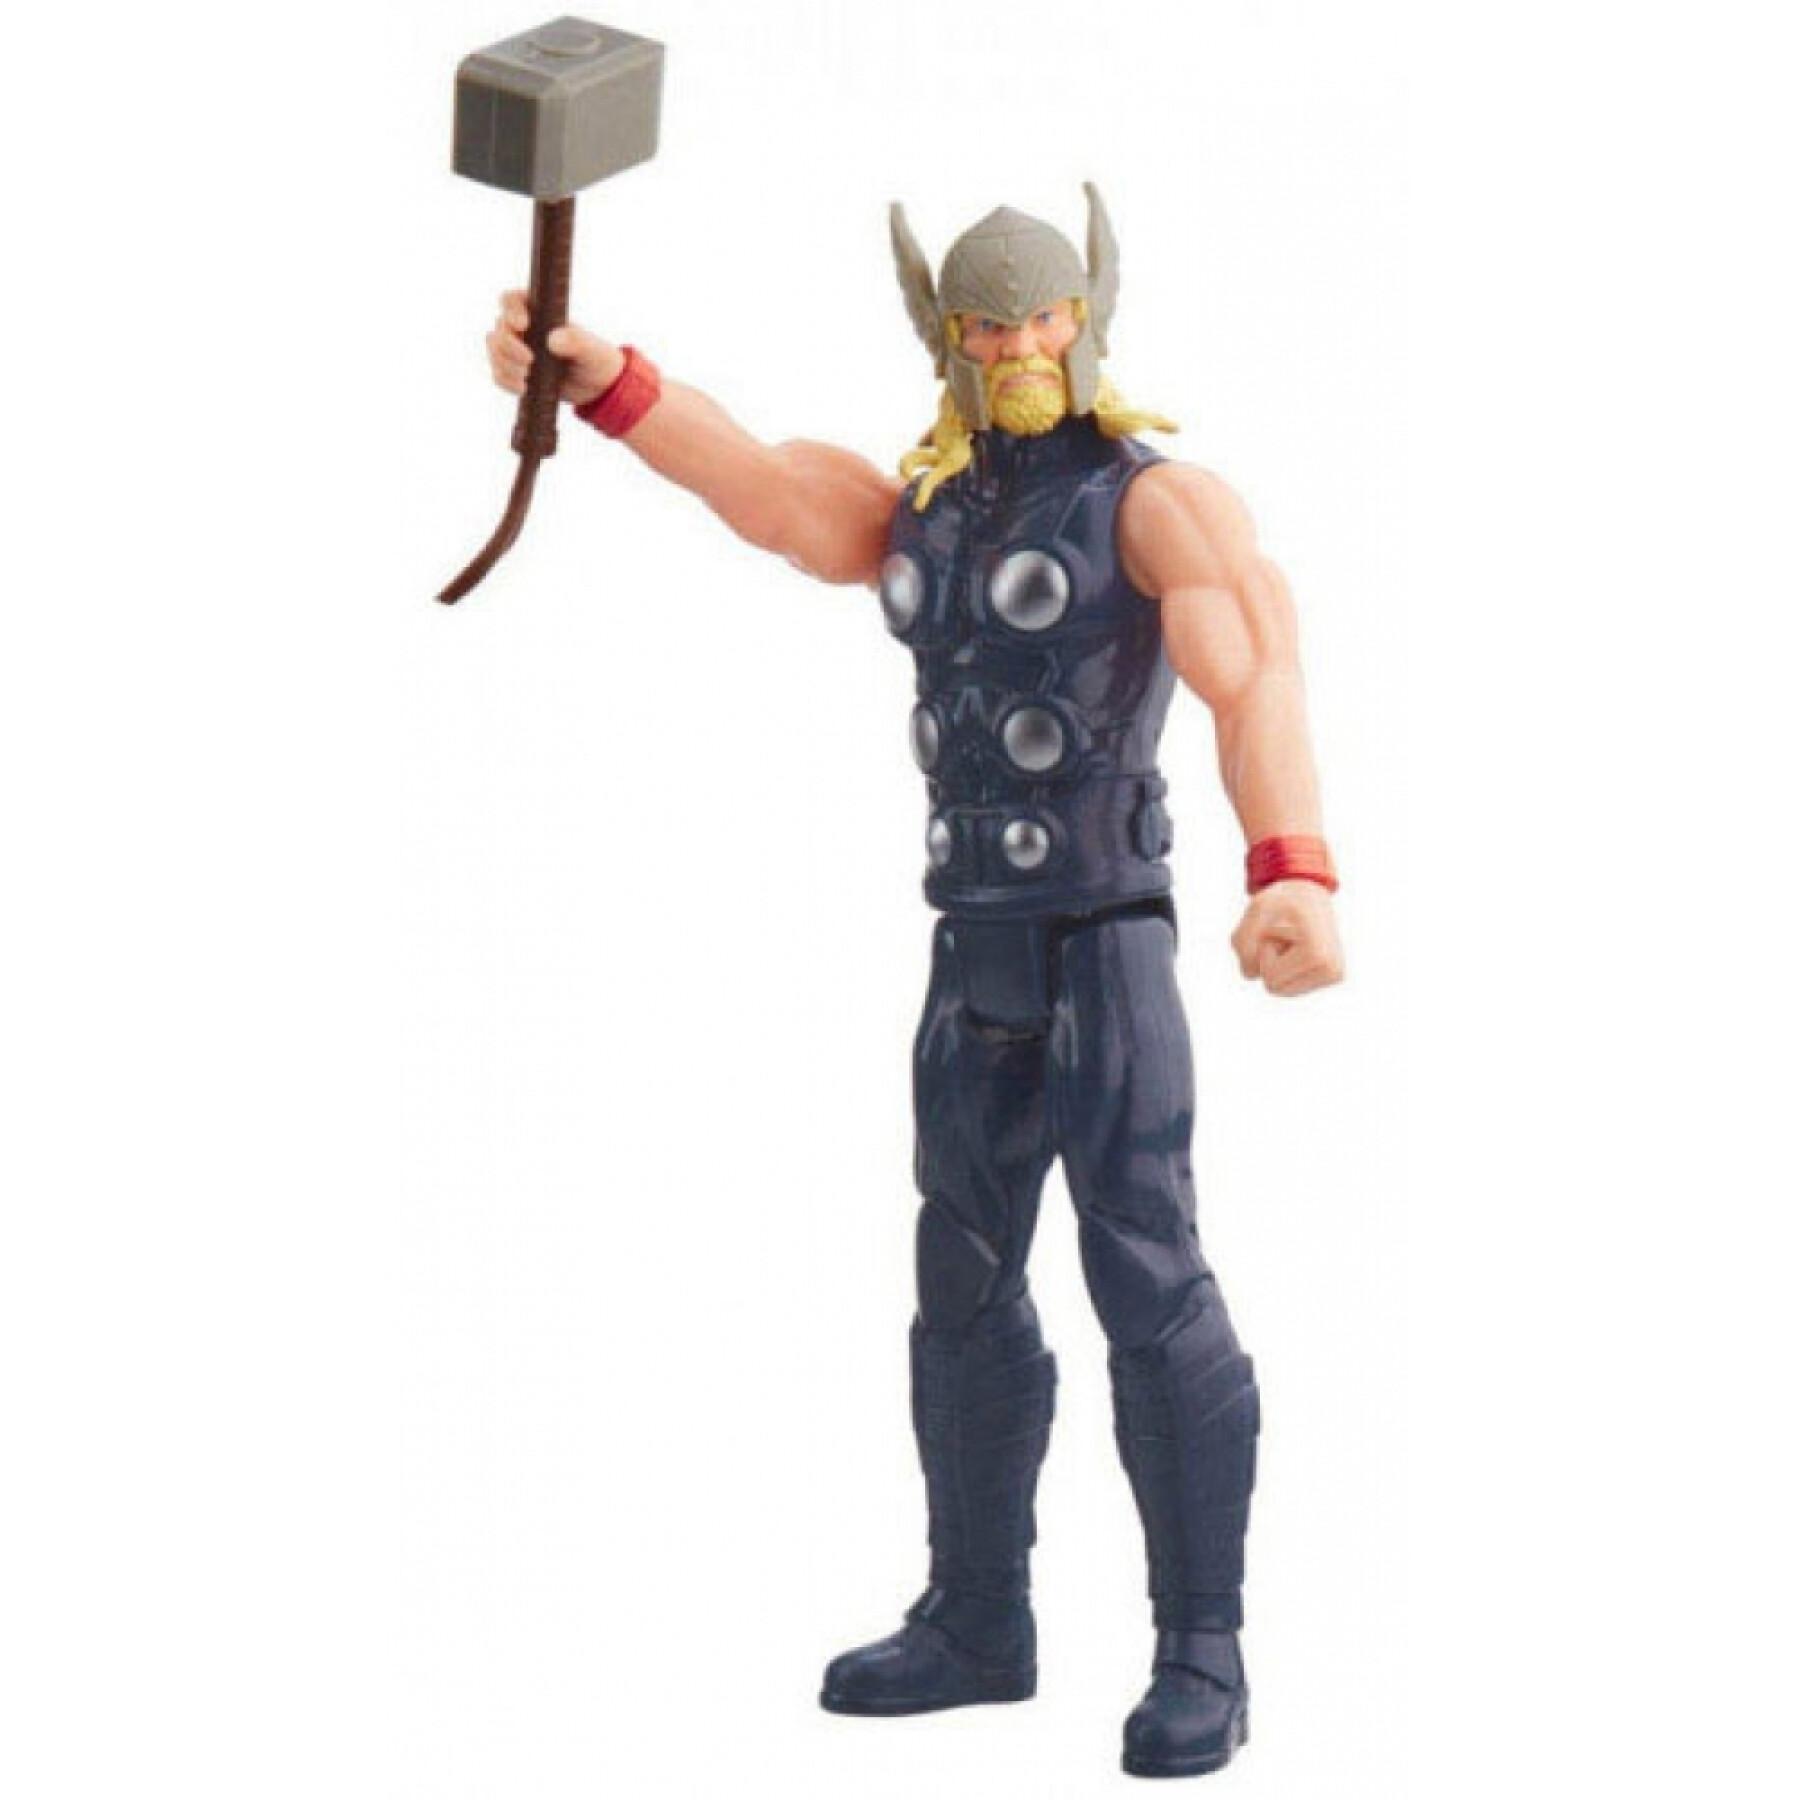 Figur Avengers Titán Thor